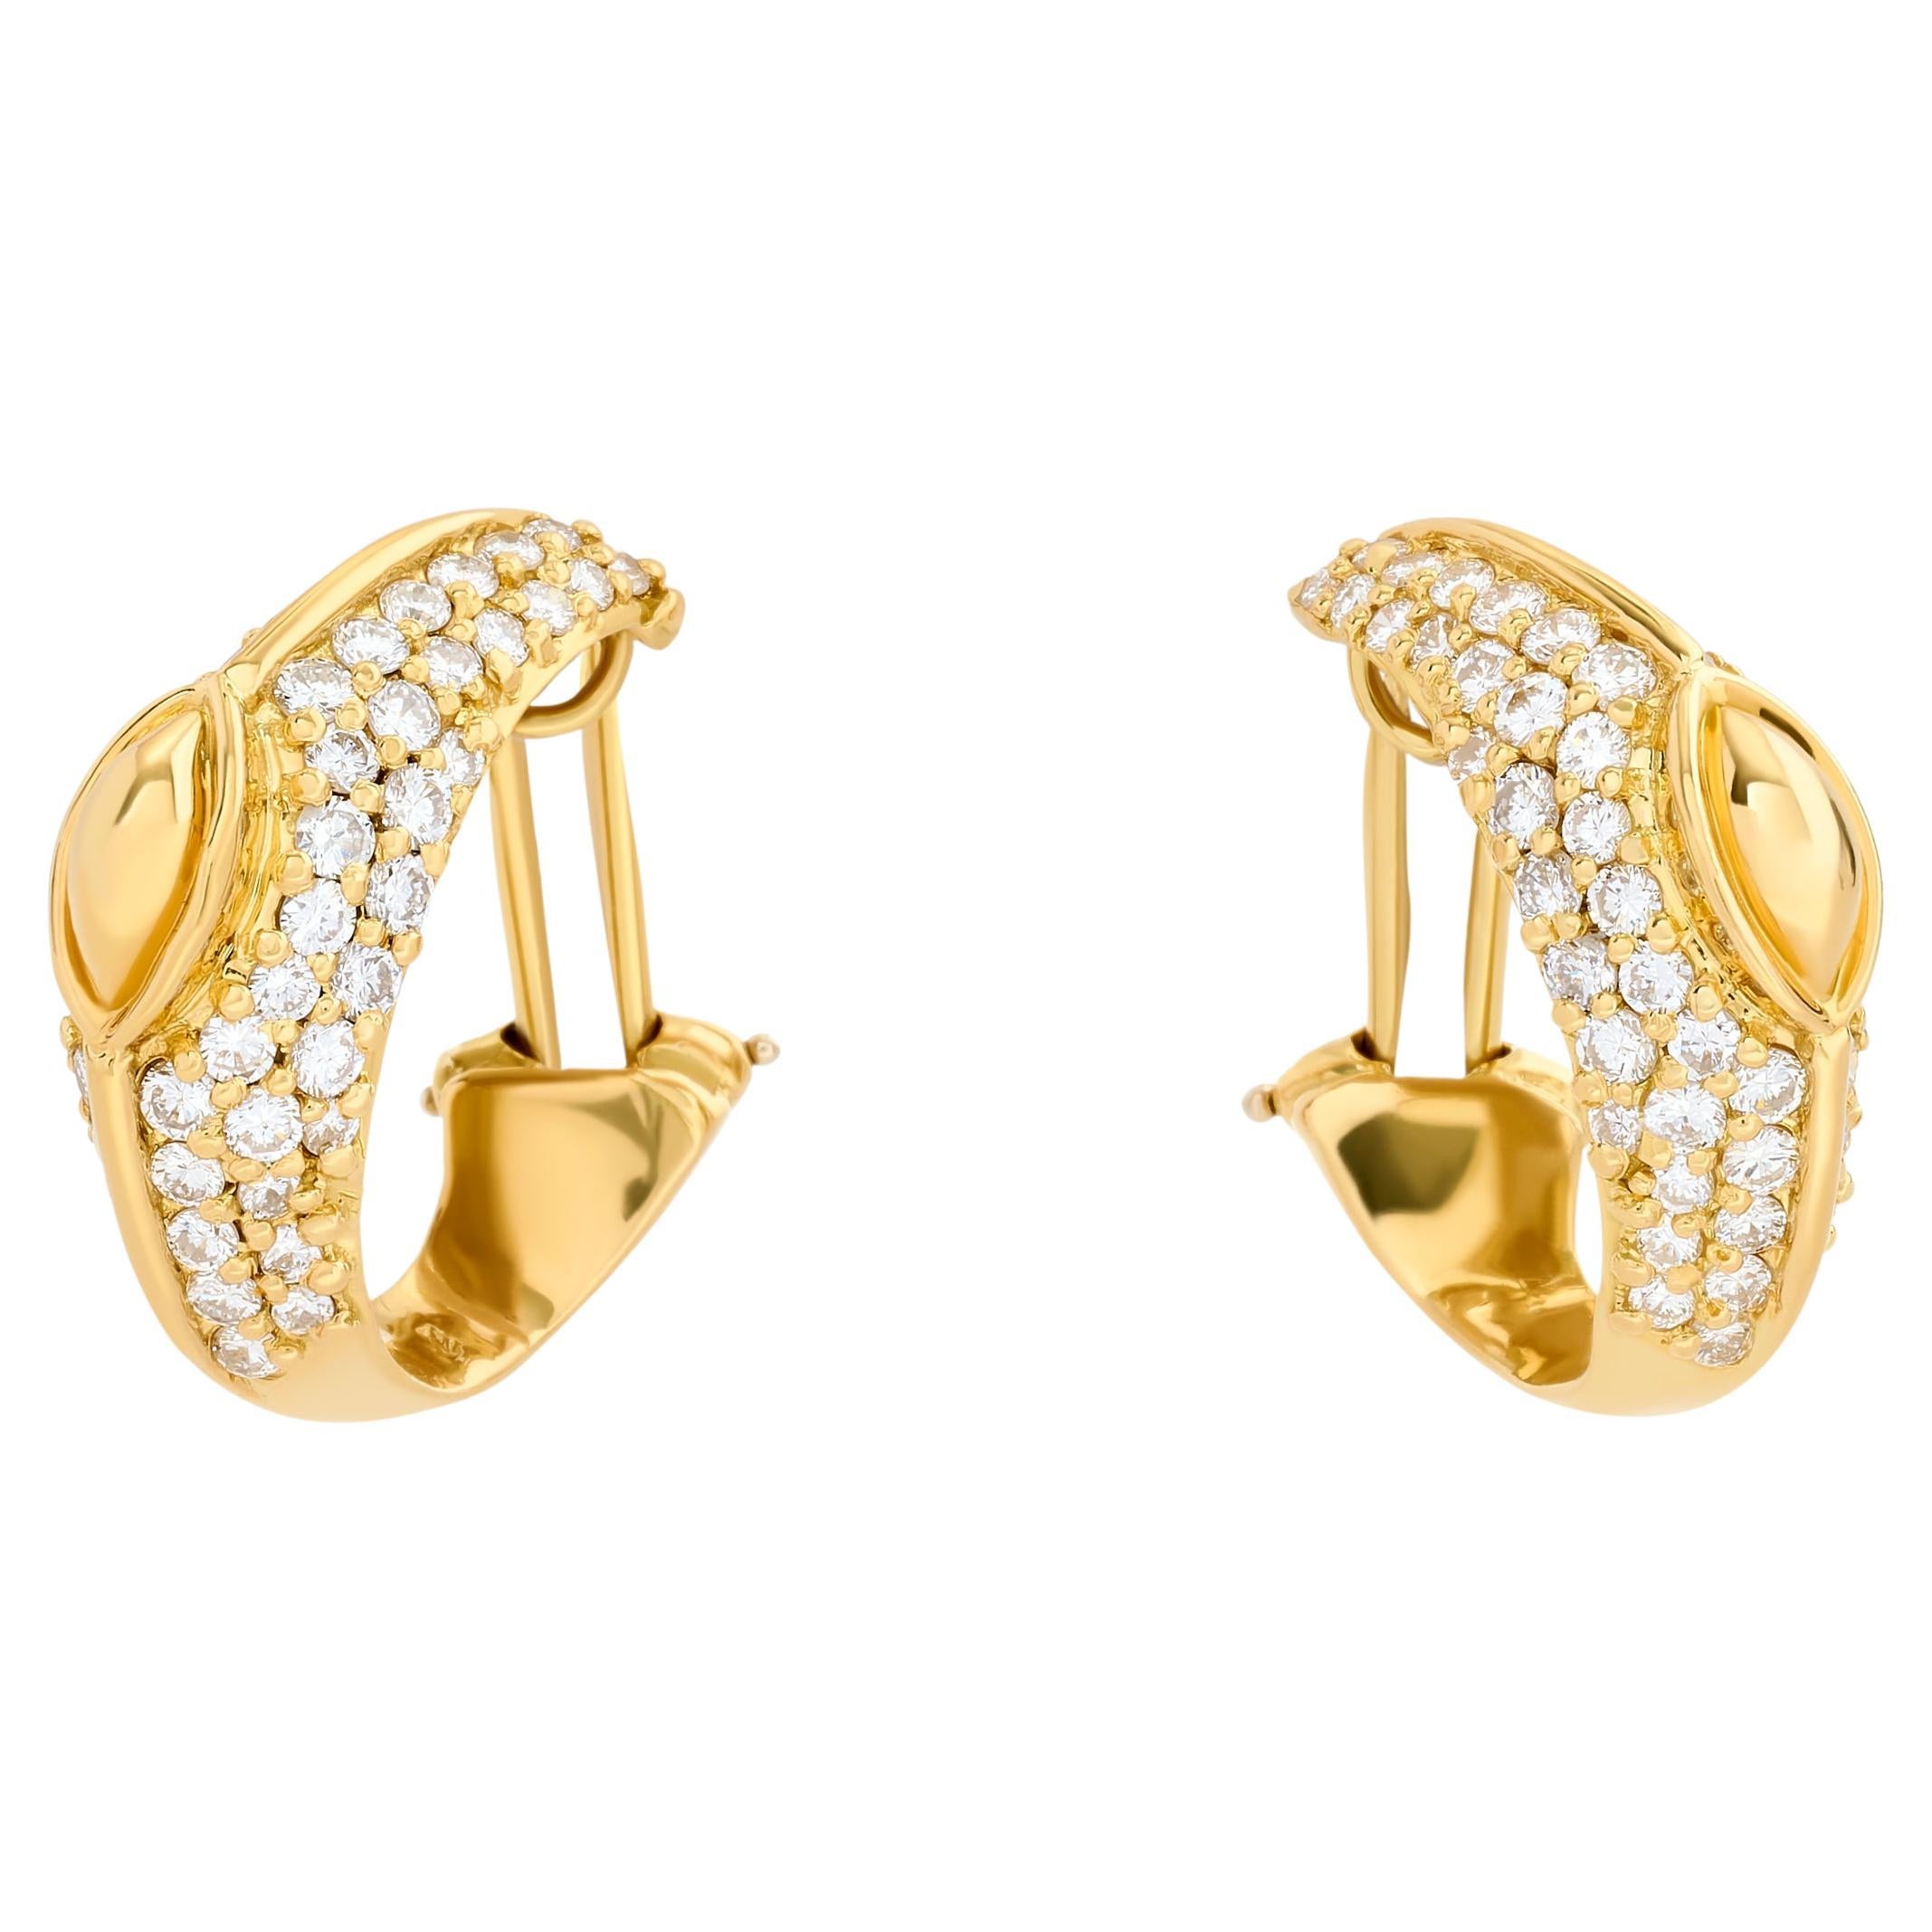 Hammerman Brothers Boucles d'oreilles en or jaune 18 carats avec diamants